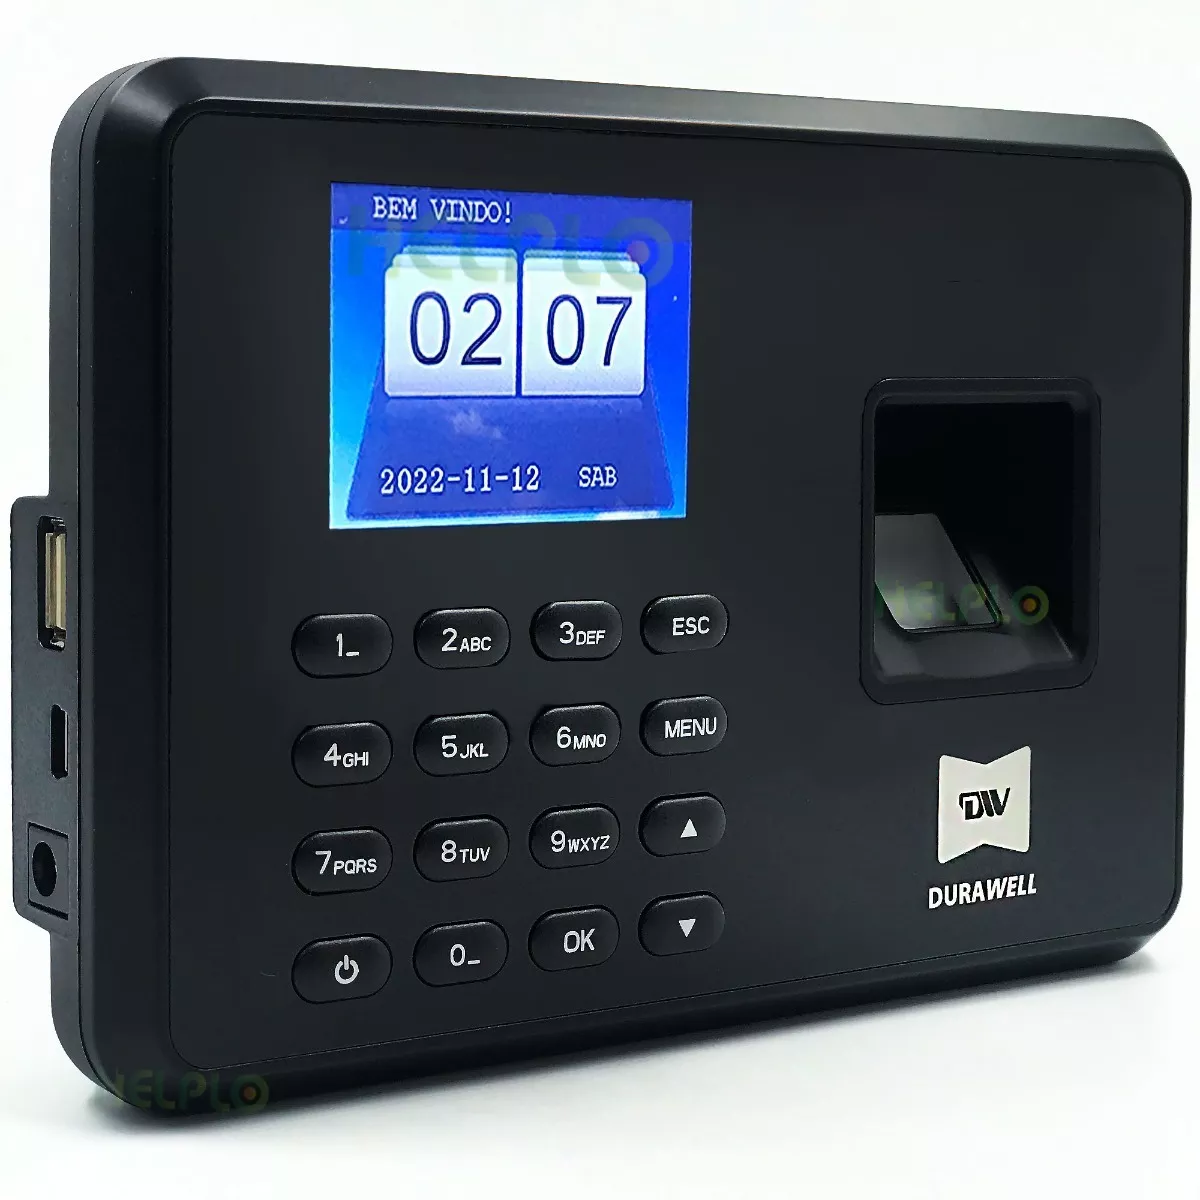 Relógio De Ponto Biométrico Impressão Digital Eletrônico Pt